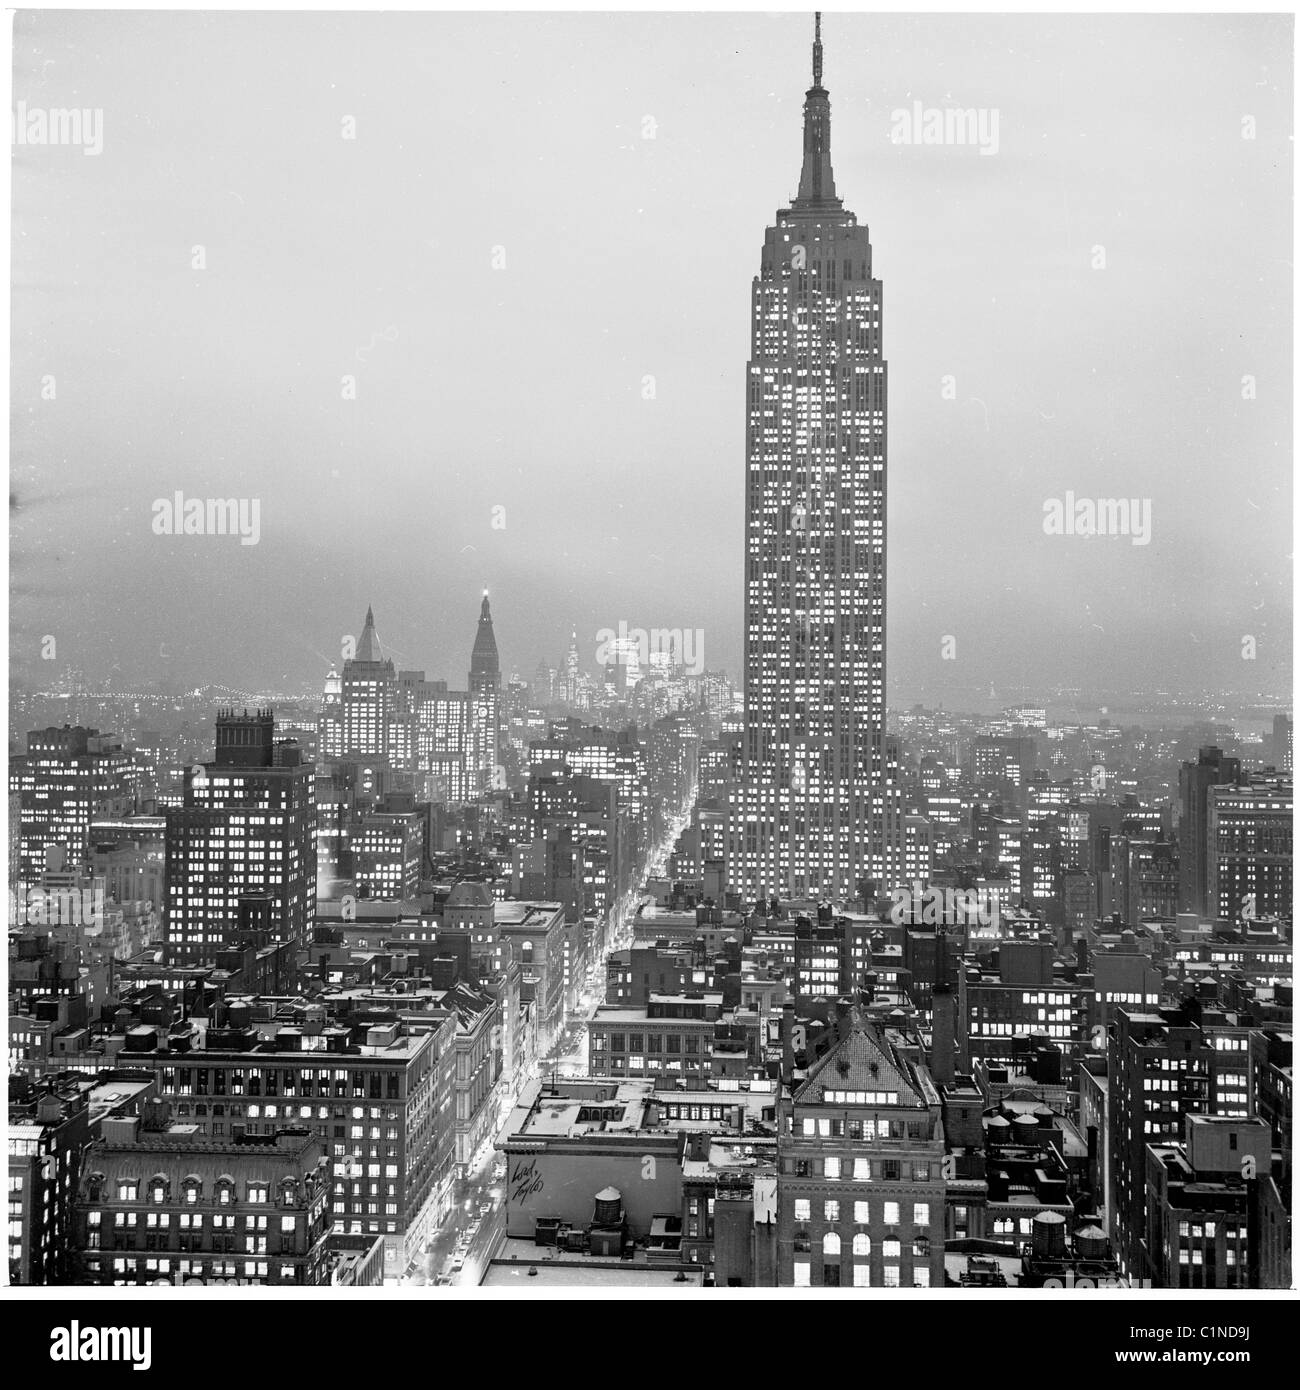 1950er Jahren New York. Blick auf die Stadt und Skyscrappers in der Nacht wie in den 1950er Jahren in diesem historischen Bild von J Allan Cash zu sehen. Stockfoto